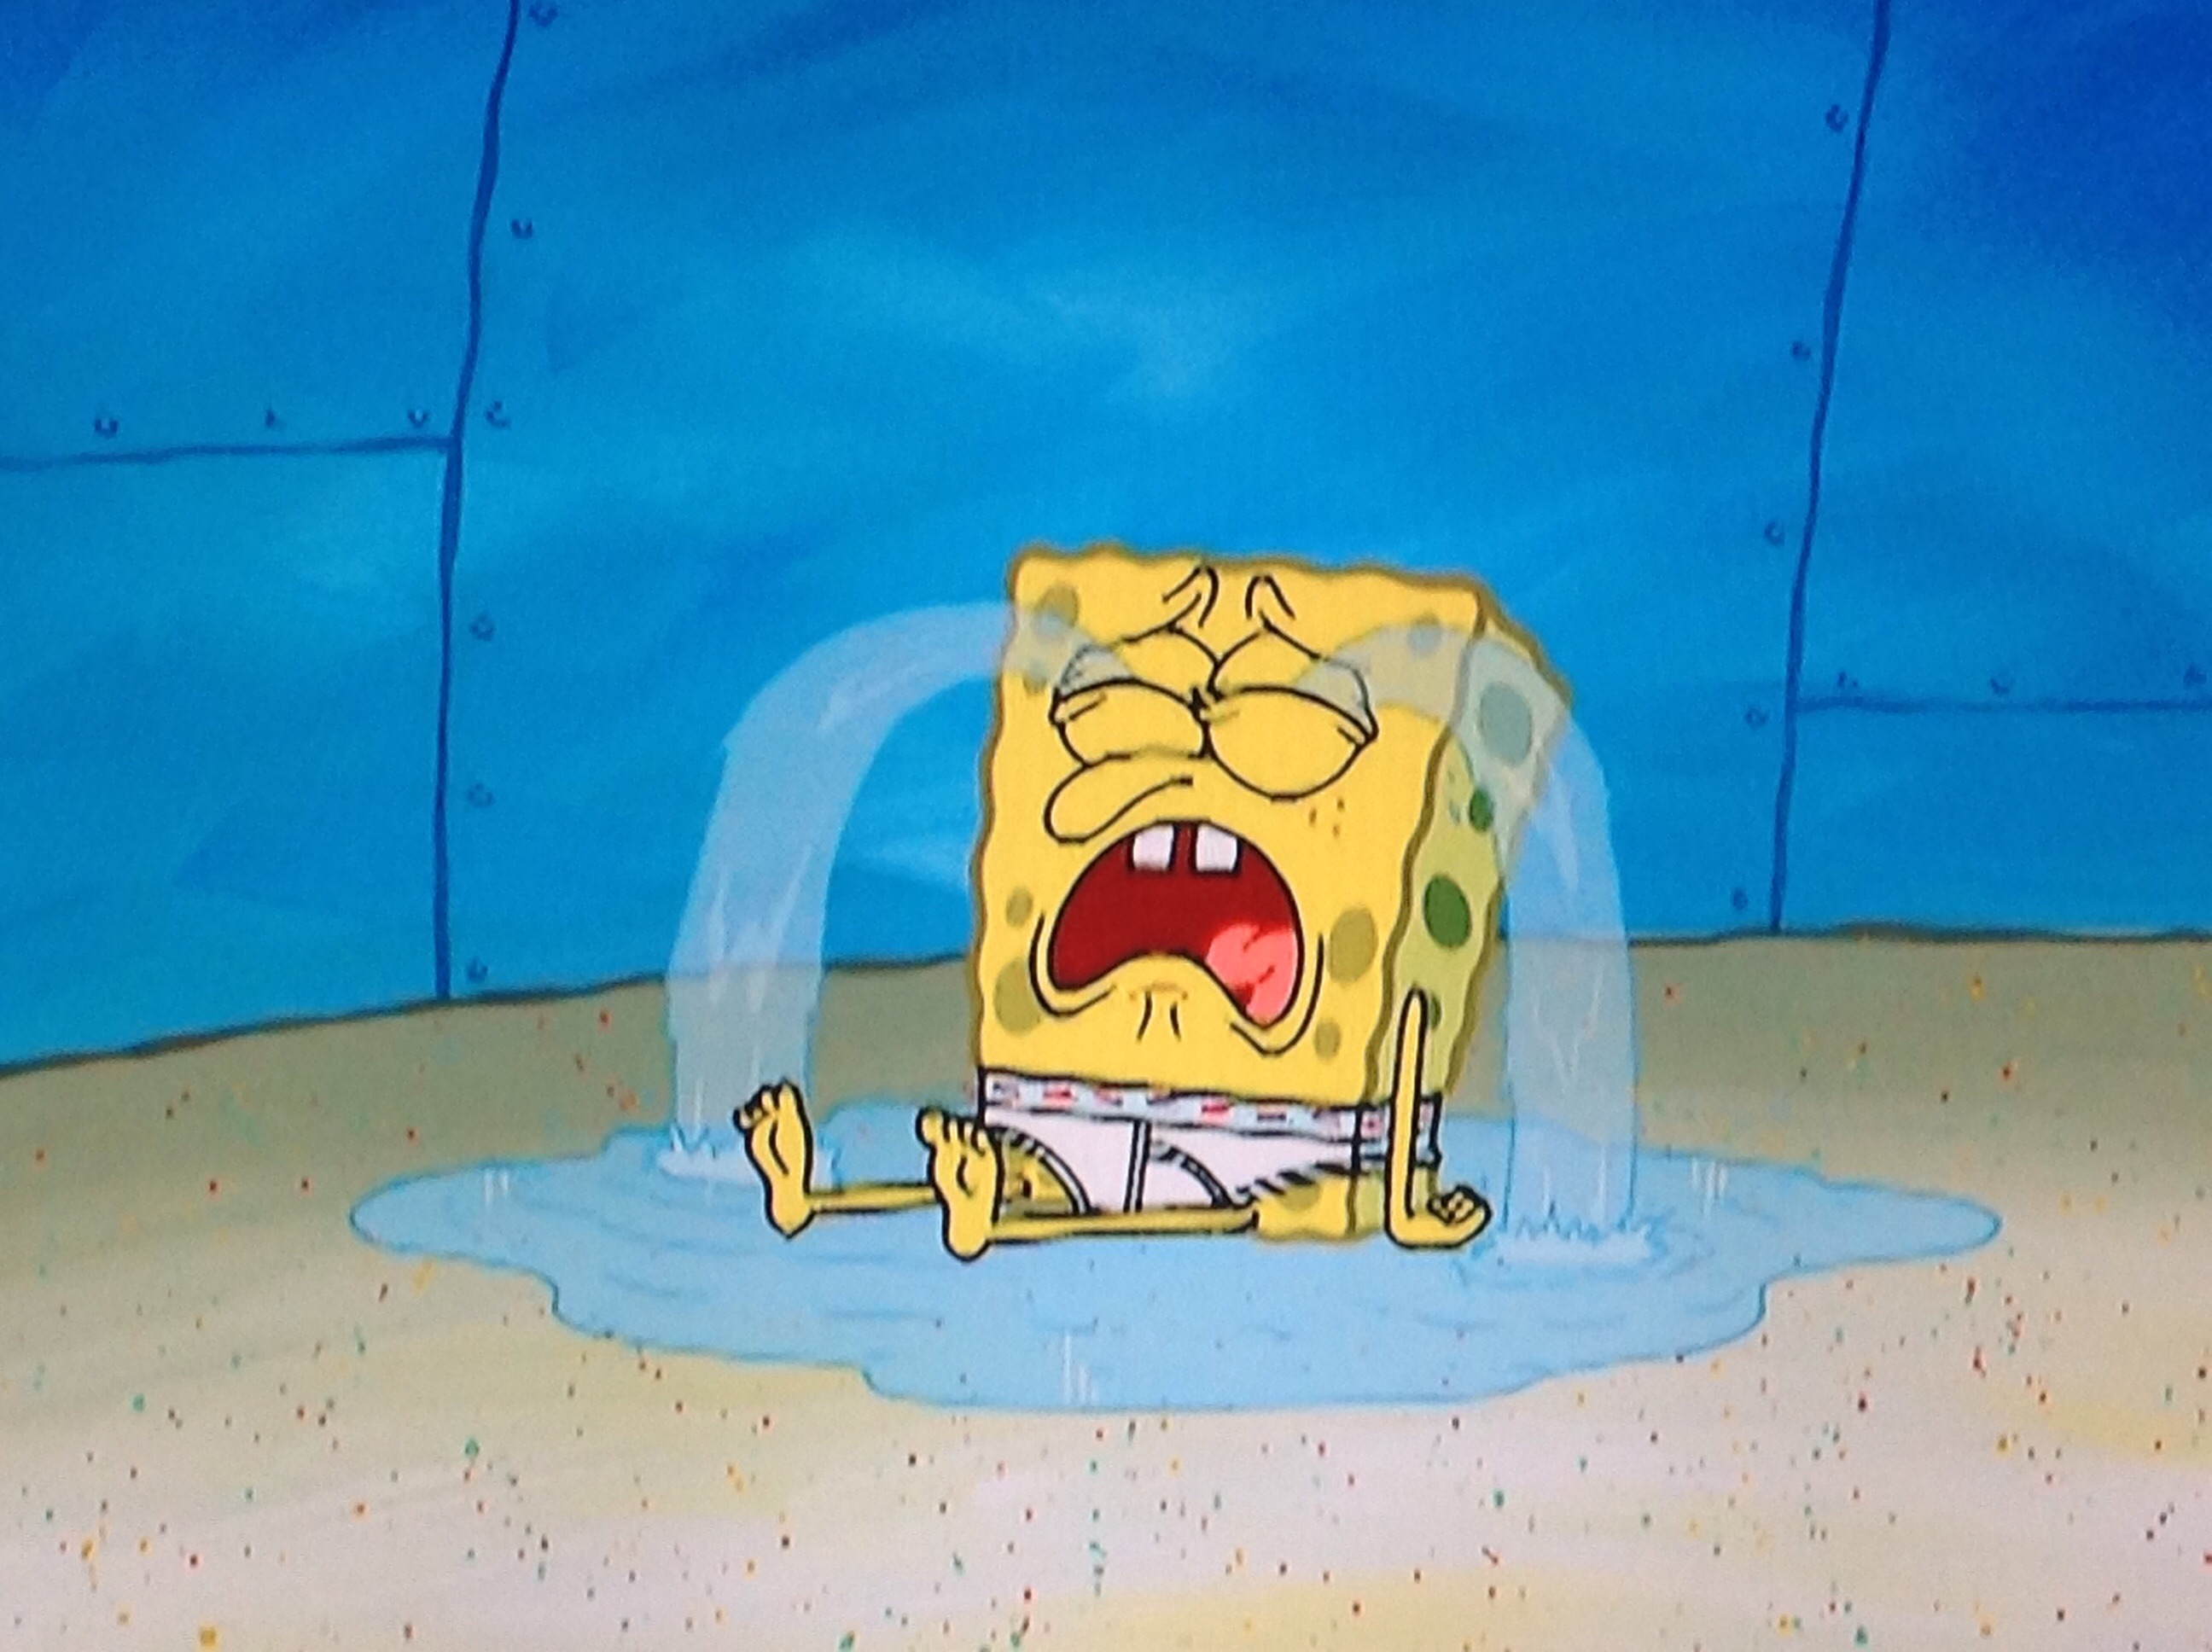 SpongeBob Memes on X: No Drama No Tears  / X